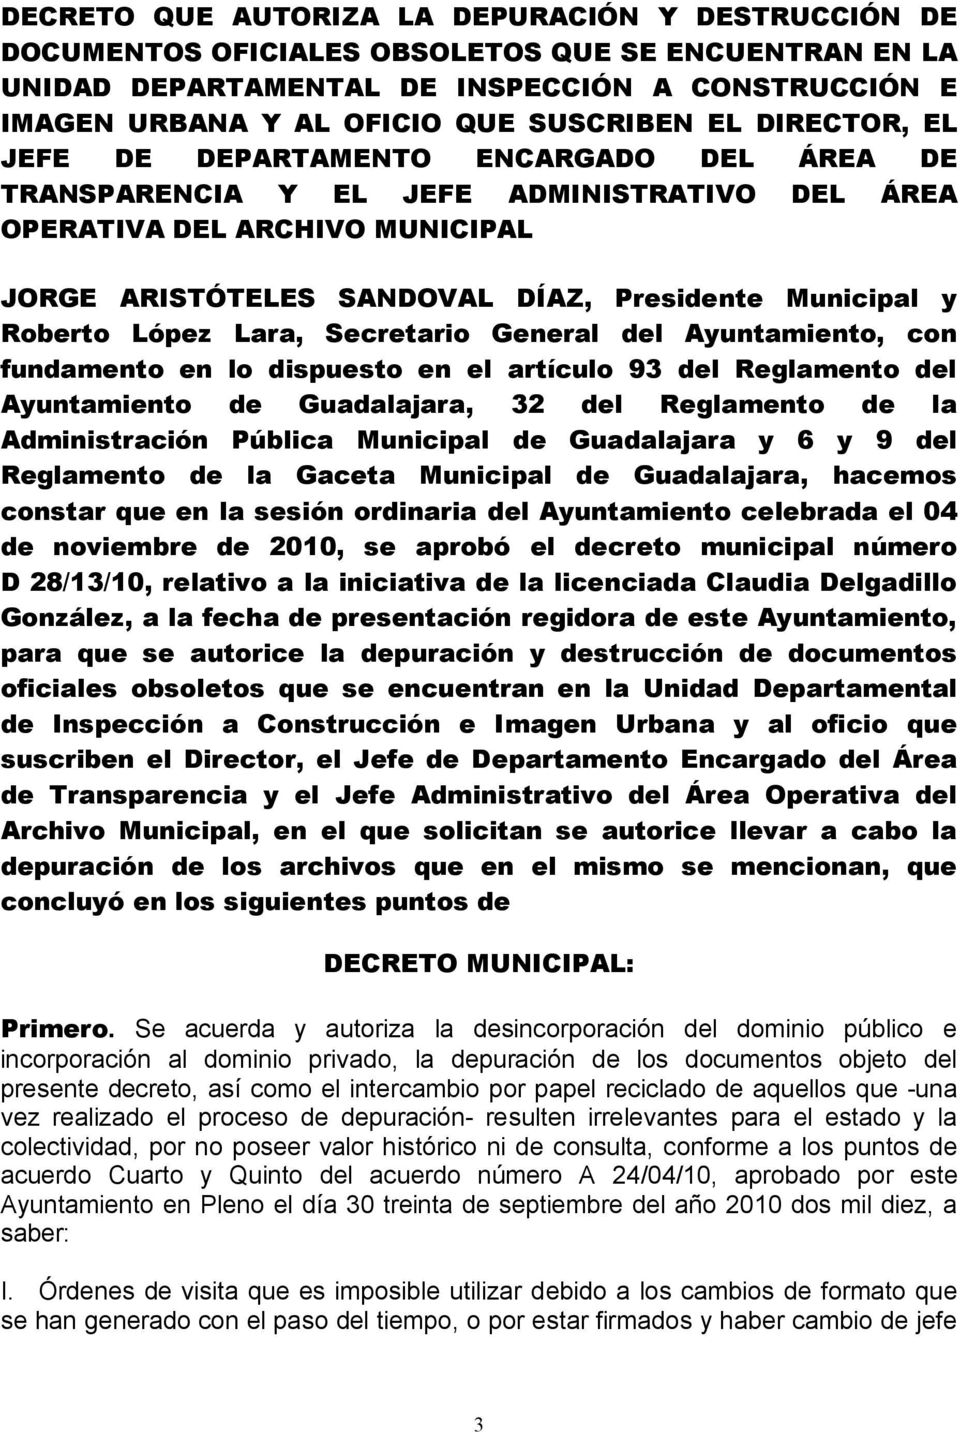 Roberto López Lara, Secretario General del Ayuntamiento, con fundamento en lo dispuesto en el artículo 93 del Reglamento del Ayuntamiento de Guadalajara, 32 del Reglamento de la Administración